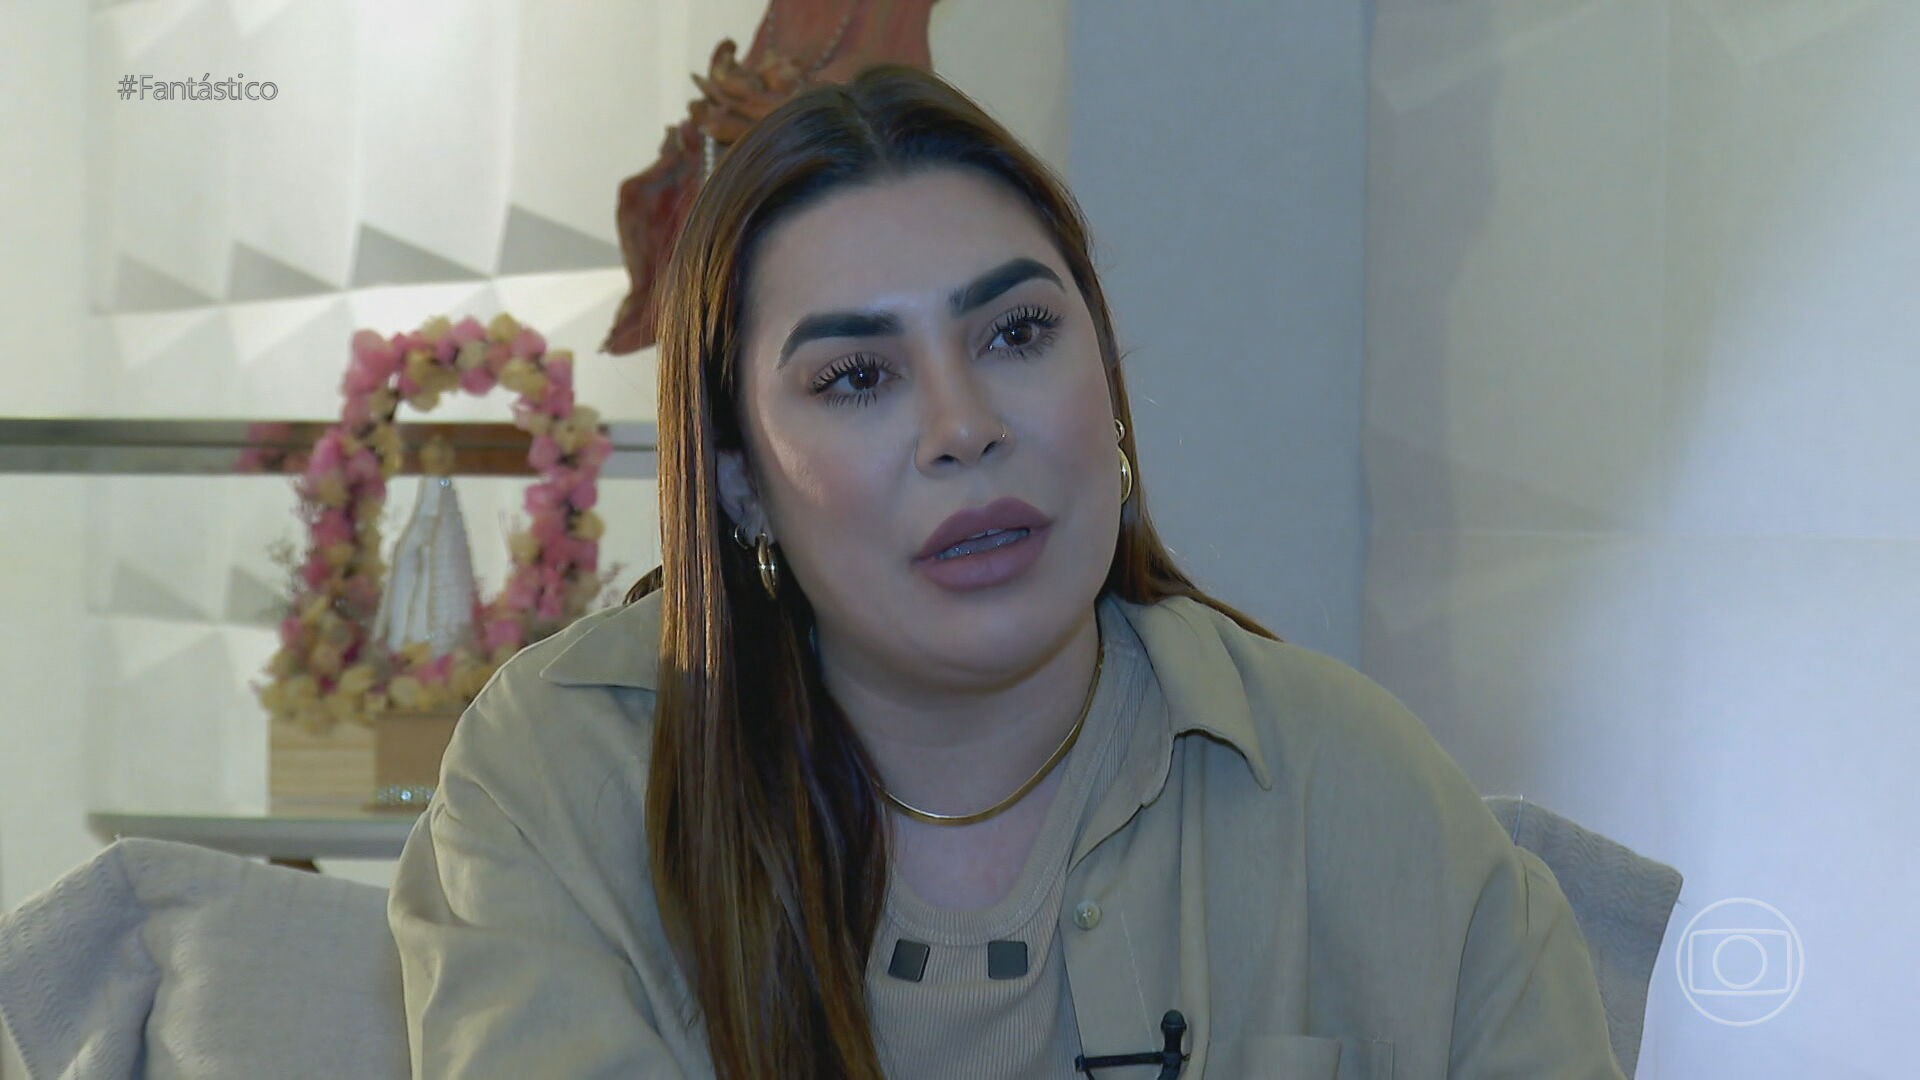 Naiara Azevedo diz que ex sacou mais de R$ 200 mil da conta antes de ela conseguir recuperar acesso